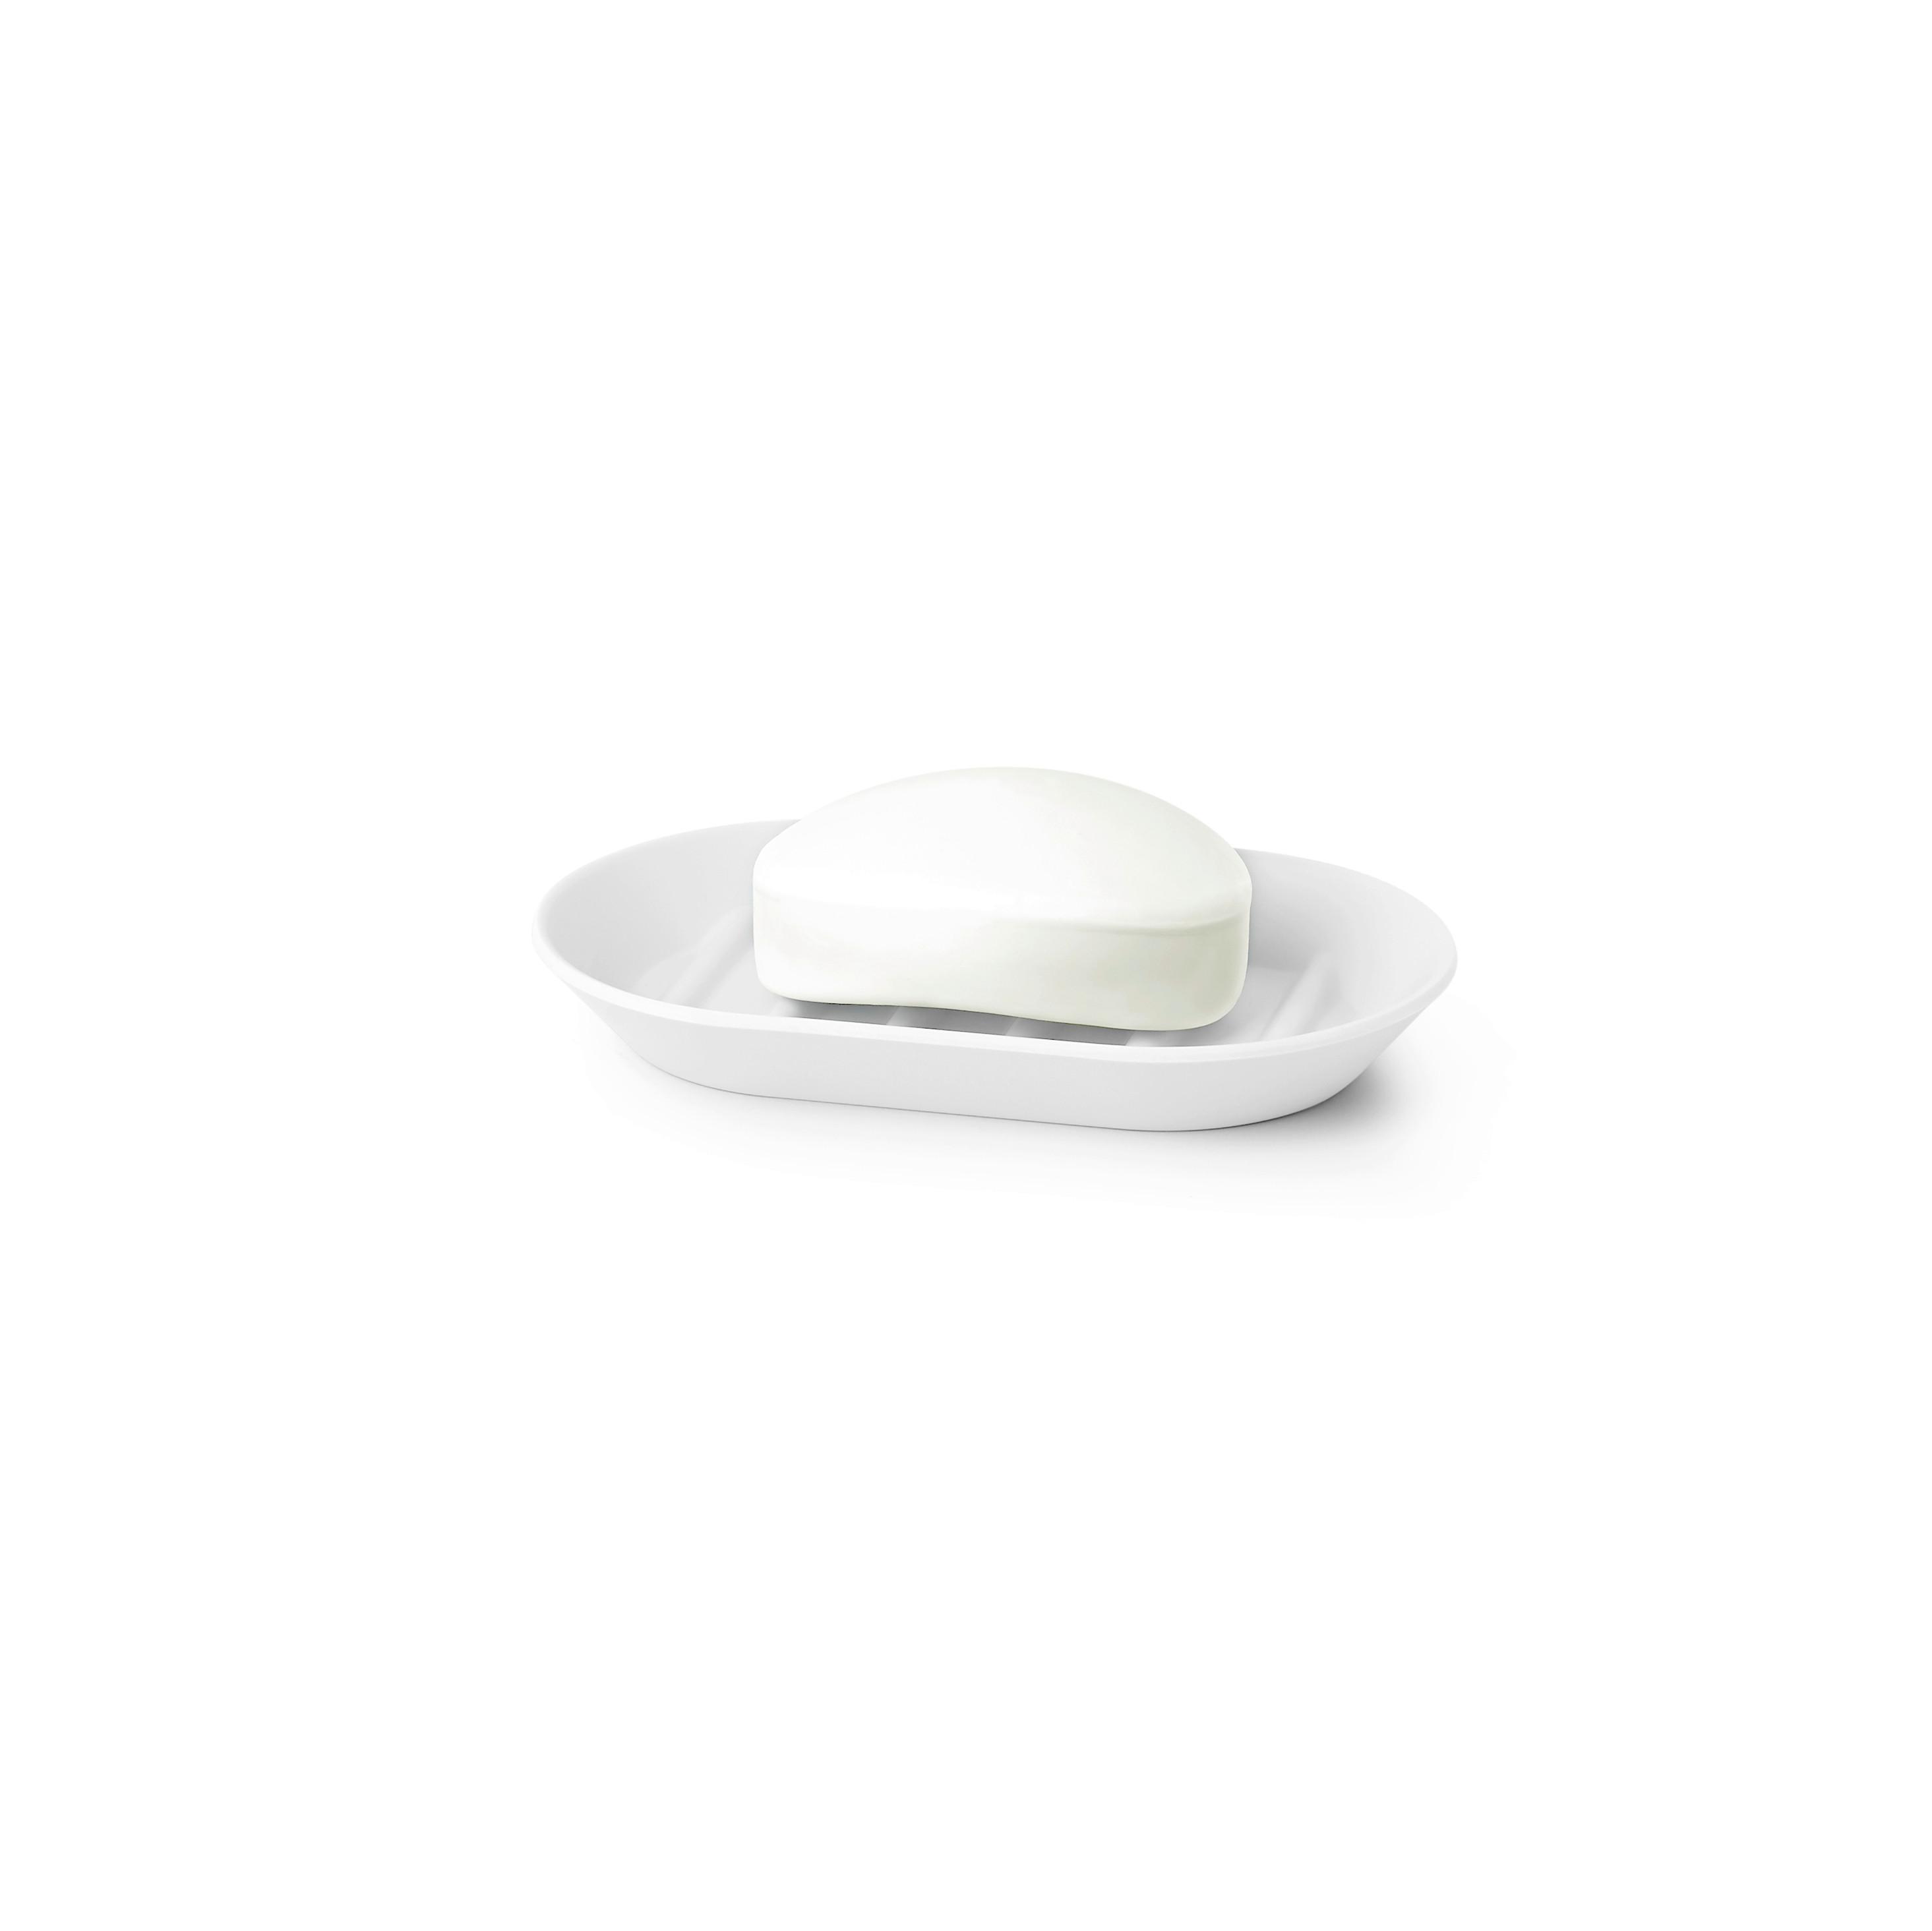 Seifenschale Lilo aus Kunststoff in Weiß - Weiß, MODERN, Kunststoff (14,6/9,22/1,90cm) - Modern Living